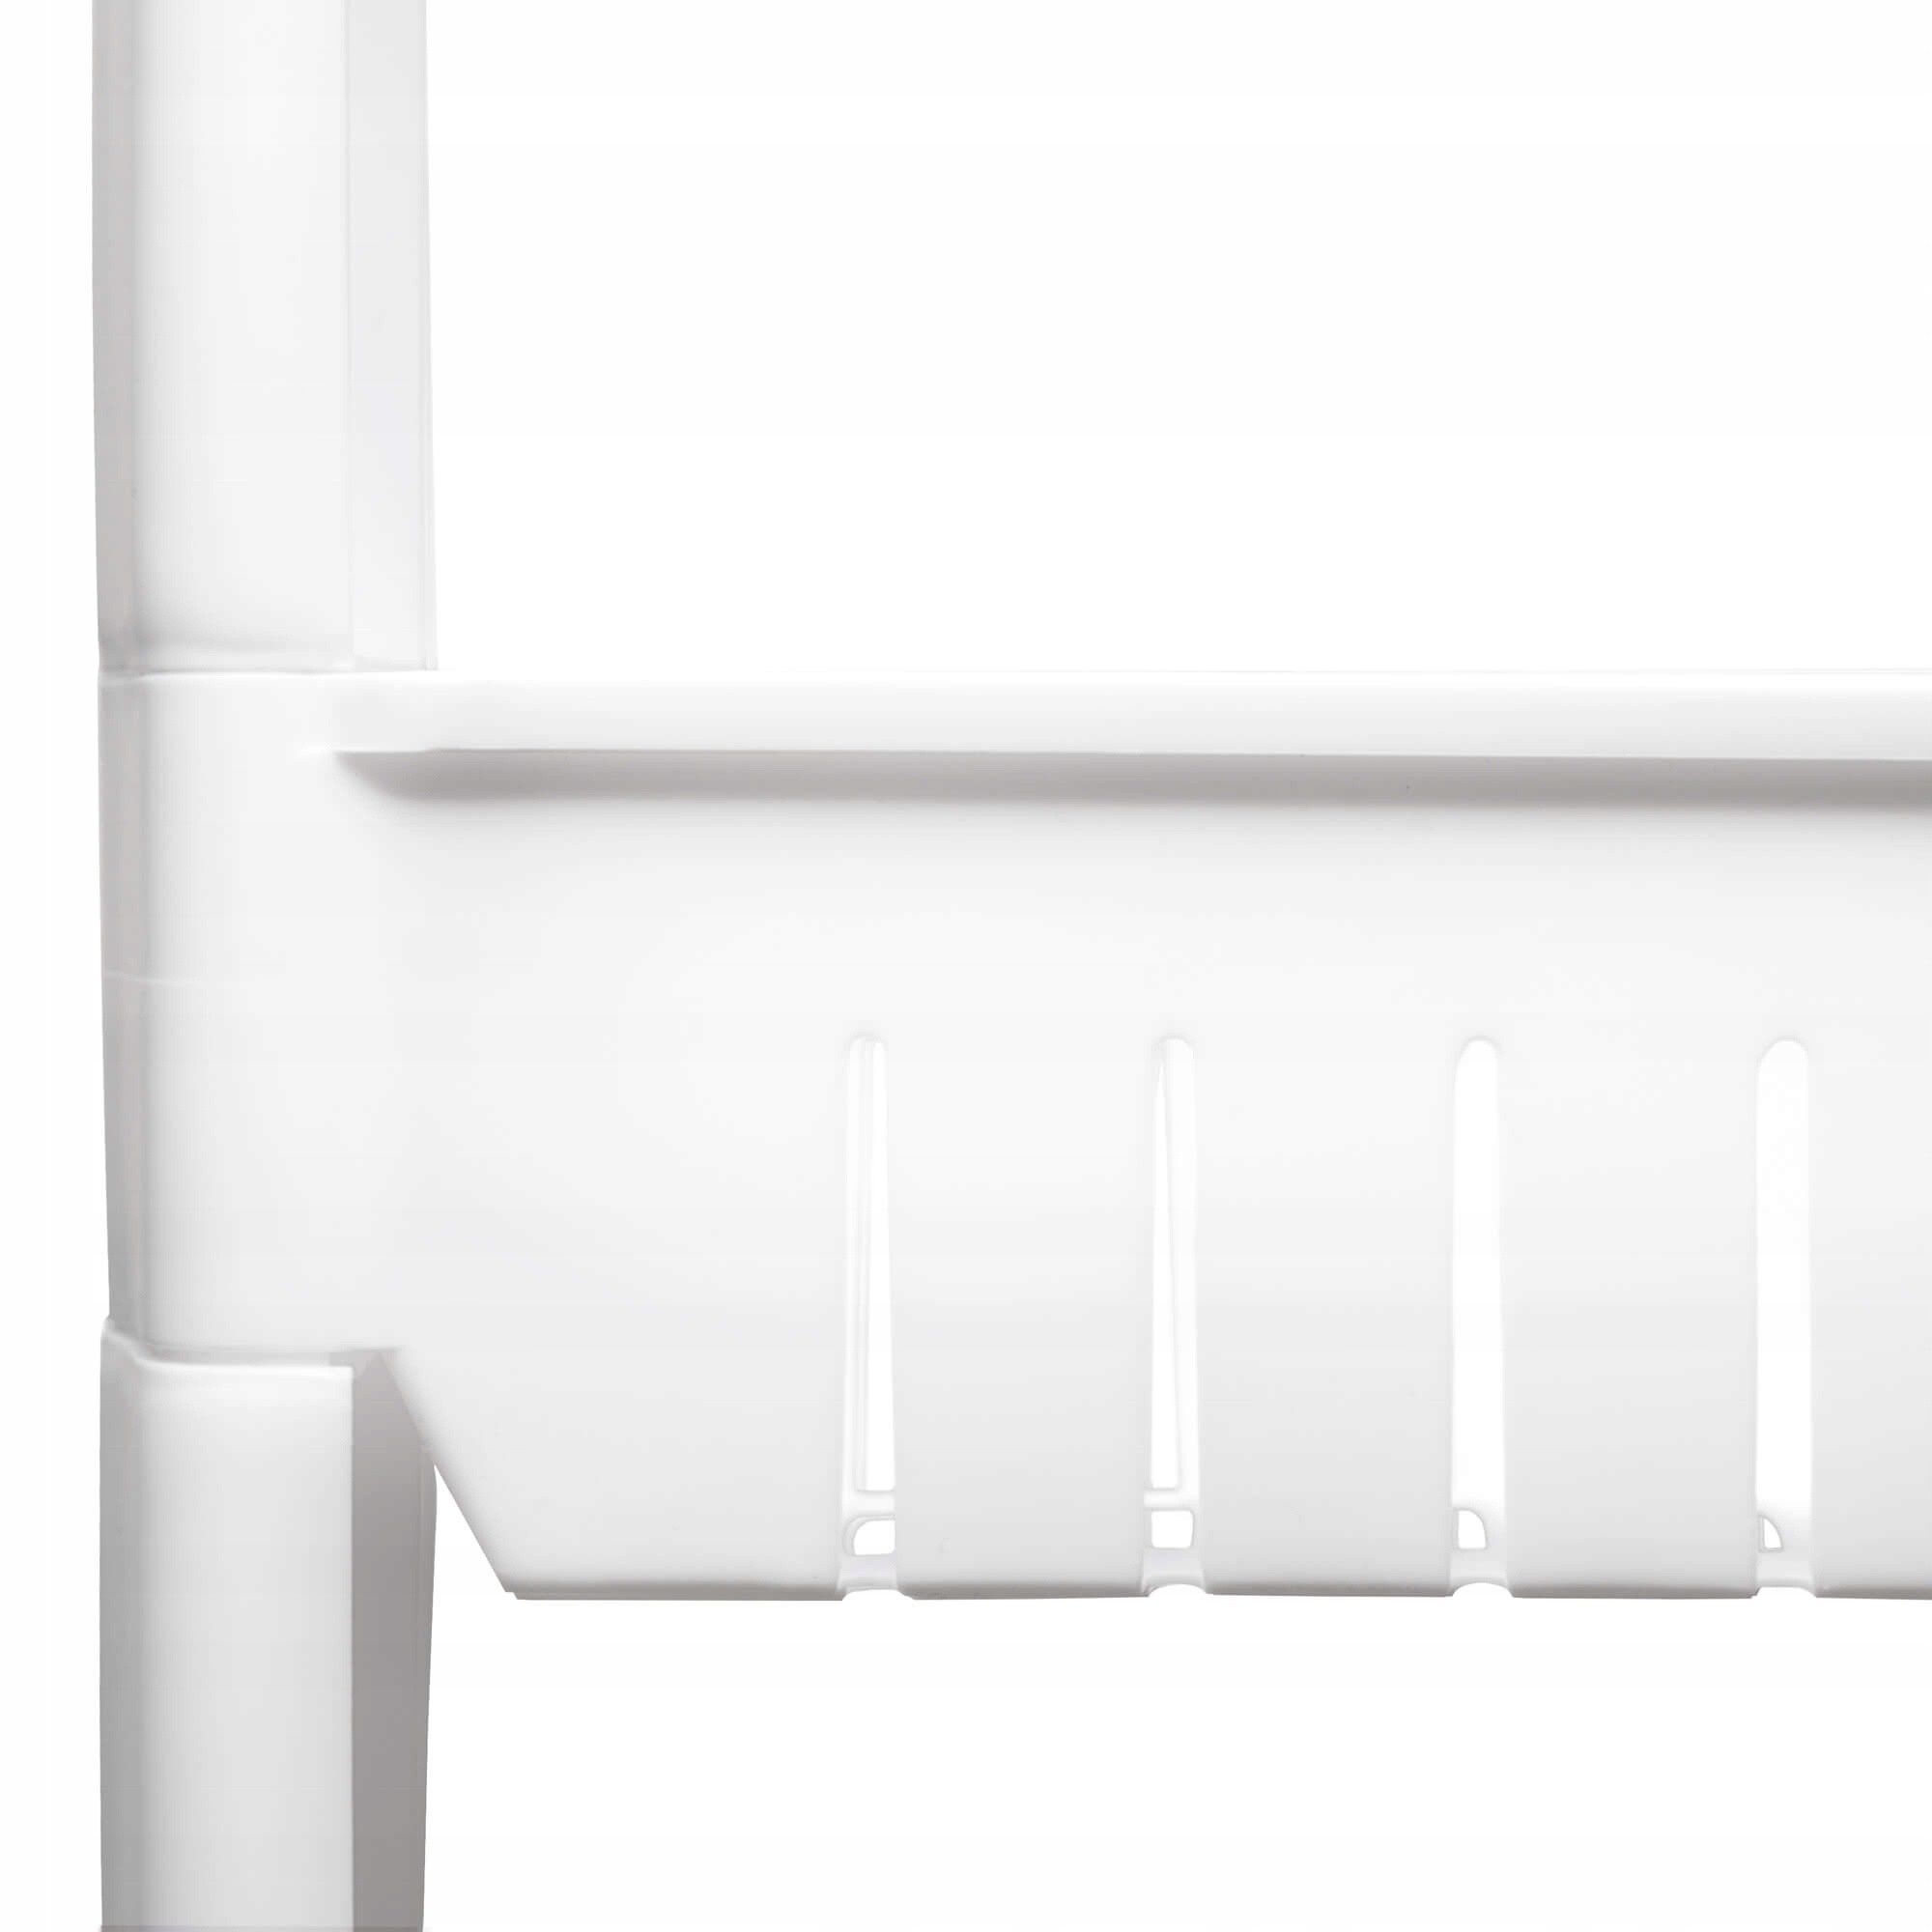 mobilný kúpeľňový stojan biely 4 poschodia 101x54x12cm s kolieskami megamix.sk